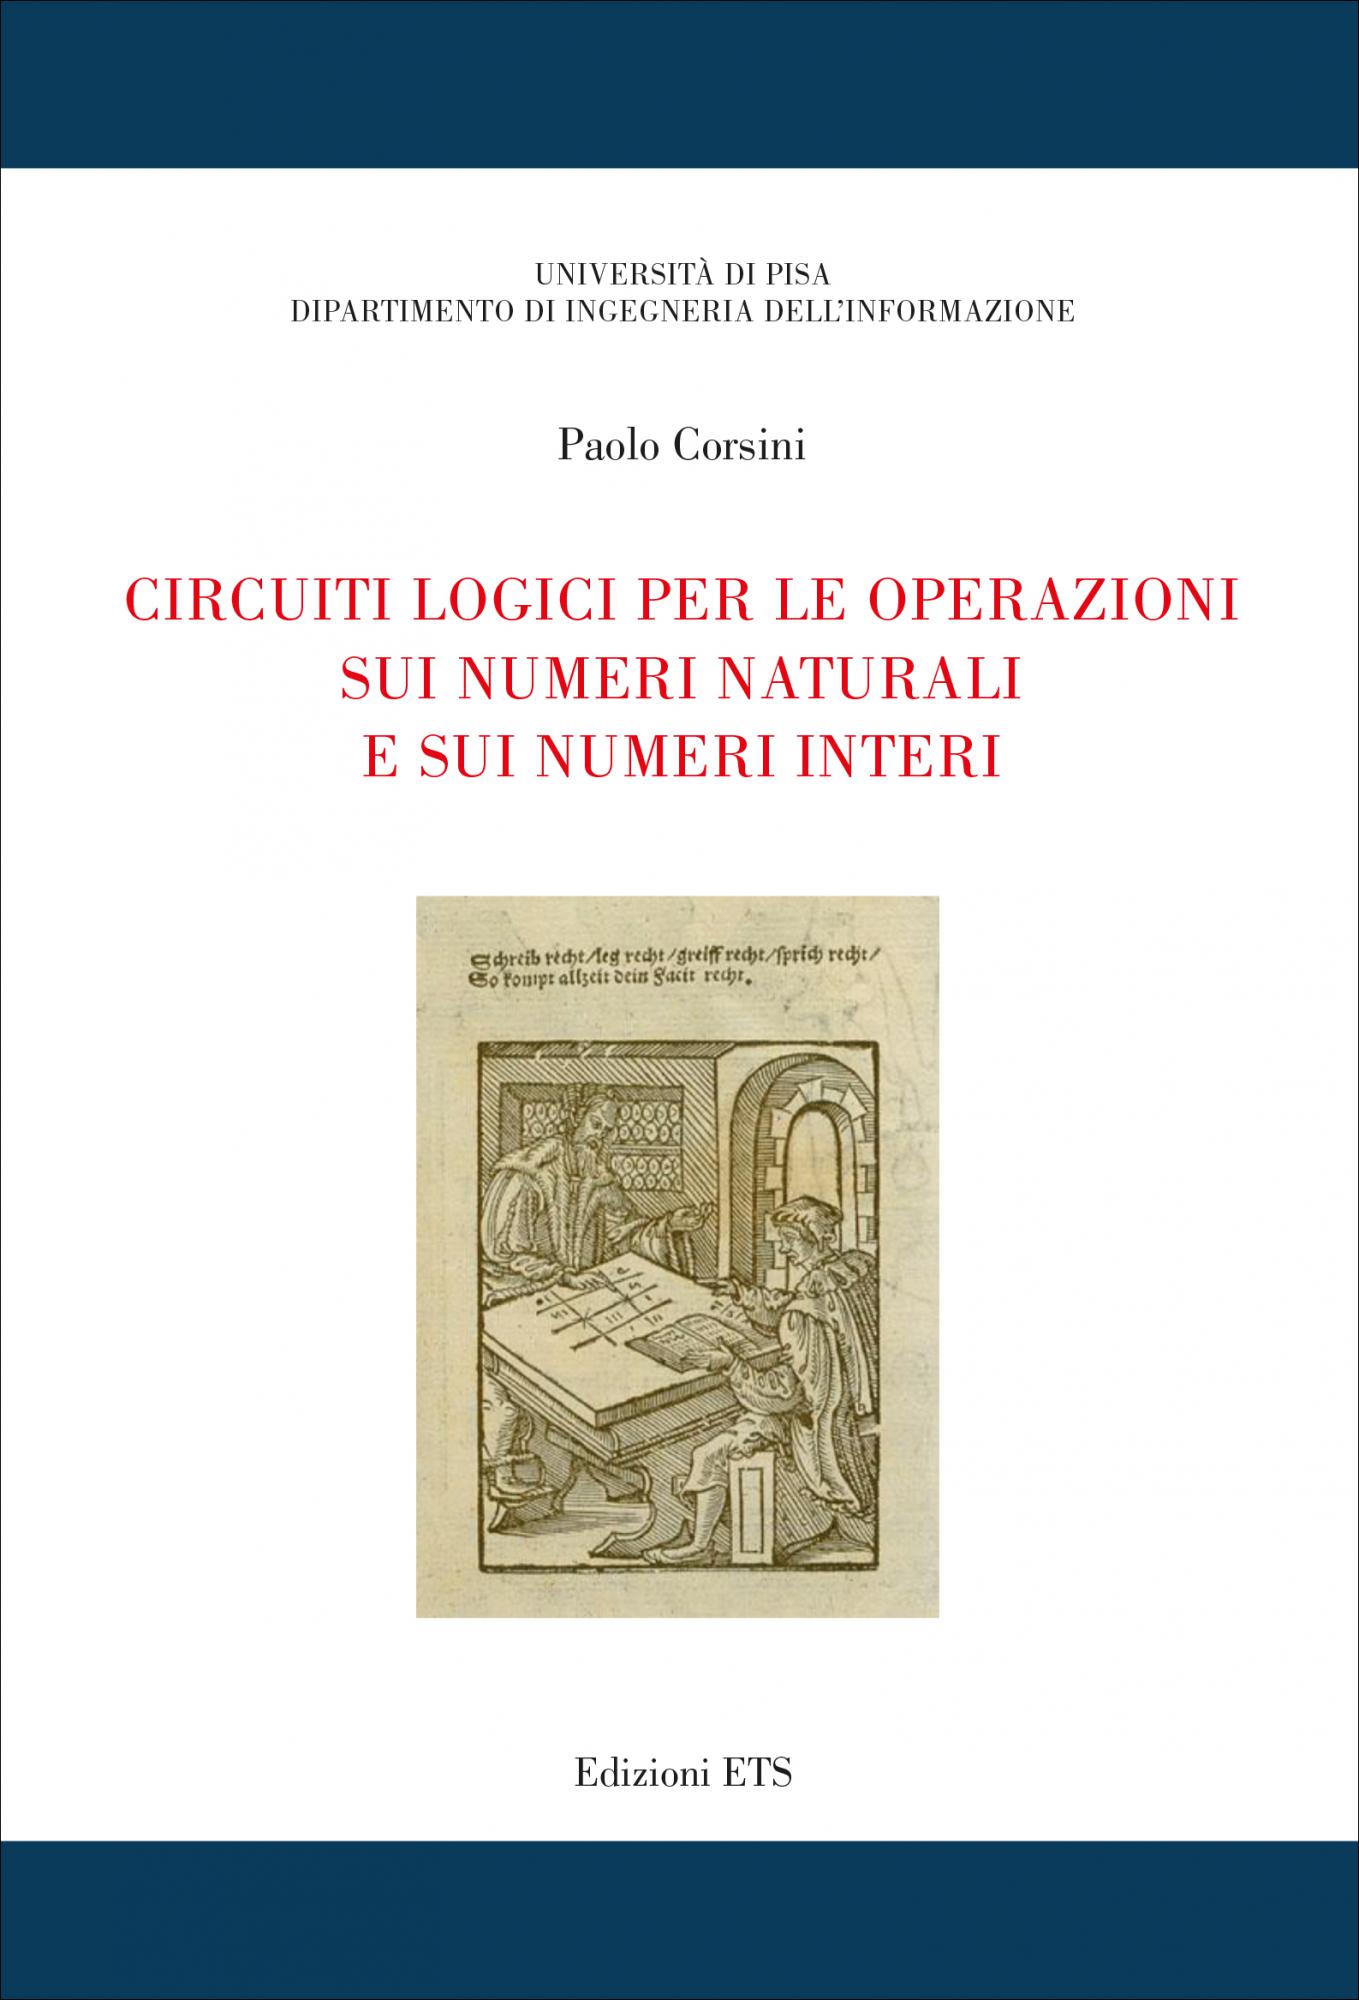 Circuiti logici per le operazioni sui numeri naturali e sui numeri interi.Edizione 2020